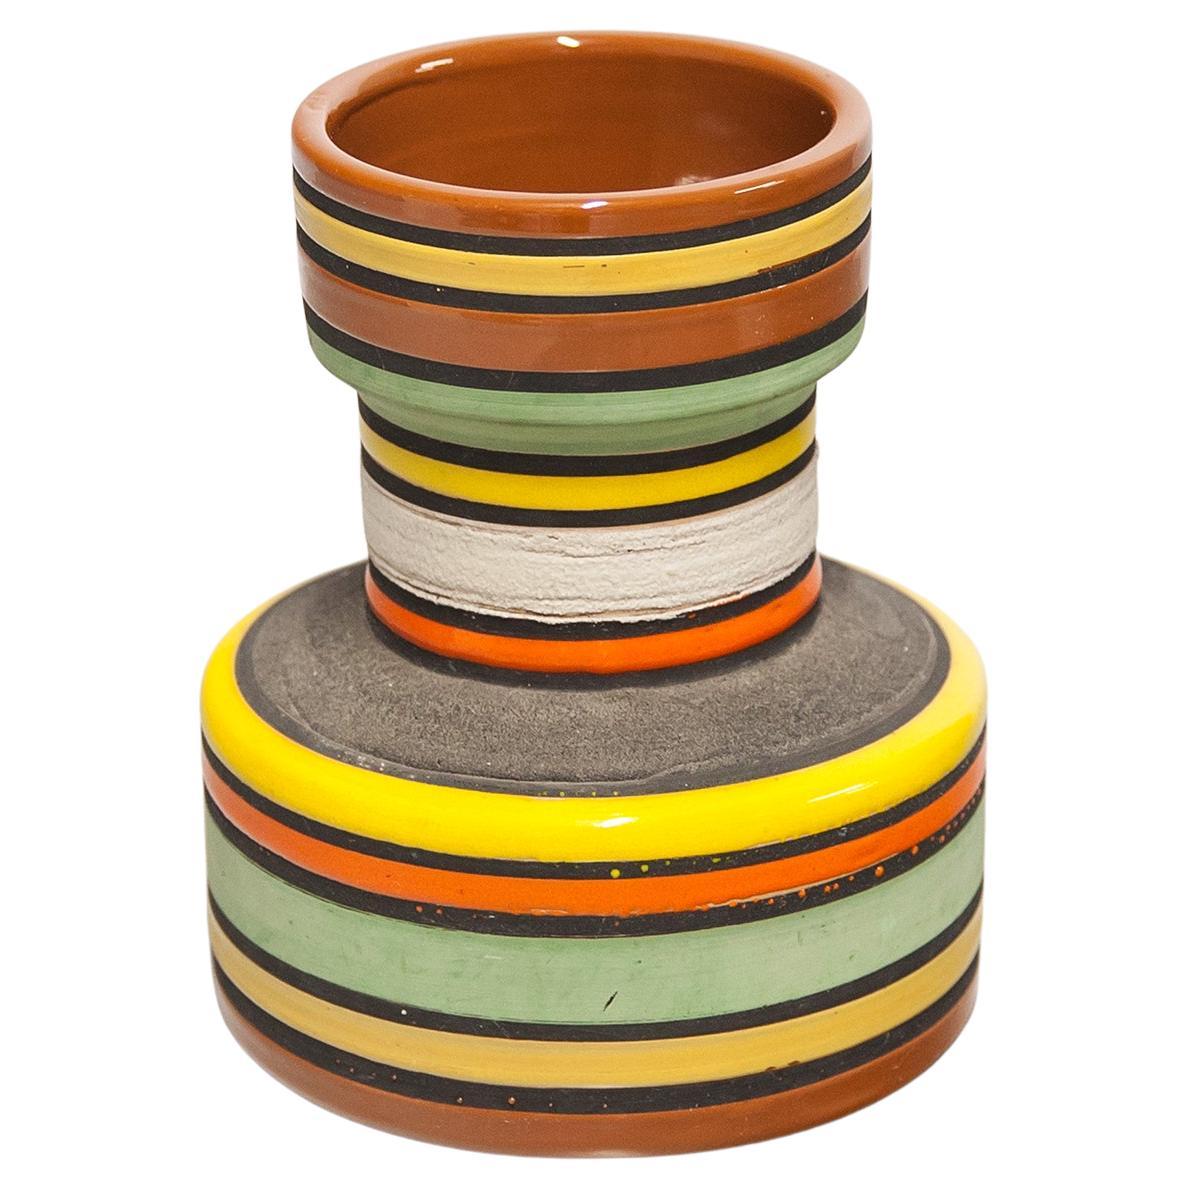 Aldo Londi Bitossi Raymor Ceramic Vase Orange Stripes Pottery Italy 1960s